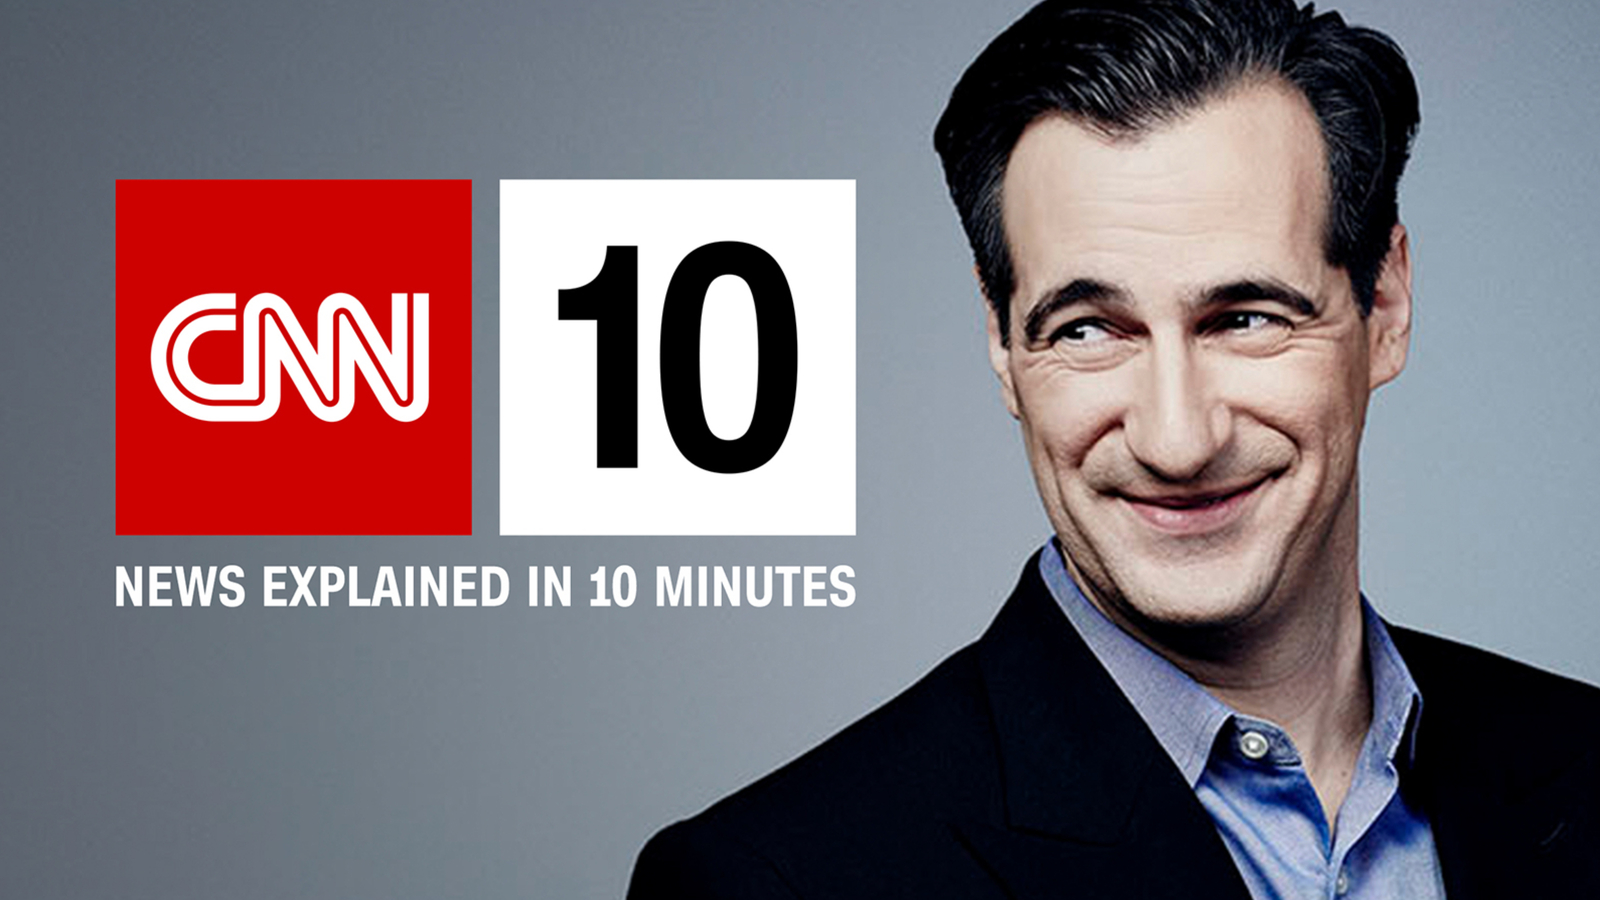 What is CNN 10? | CNN